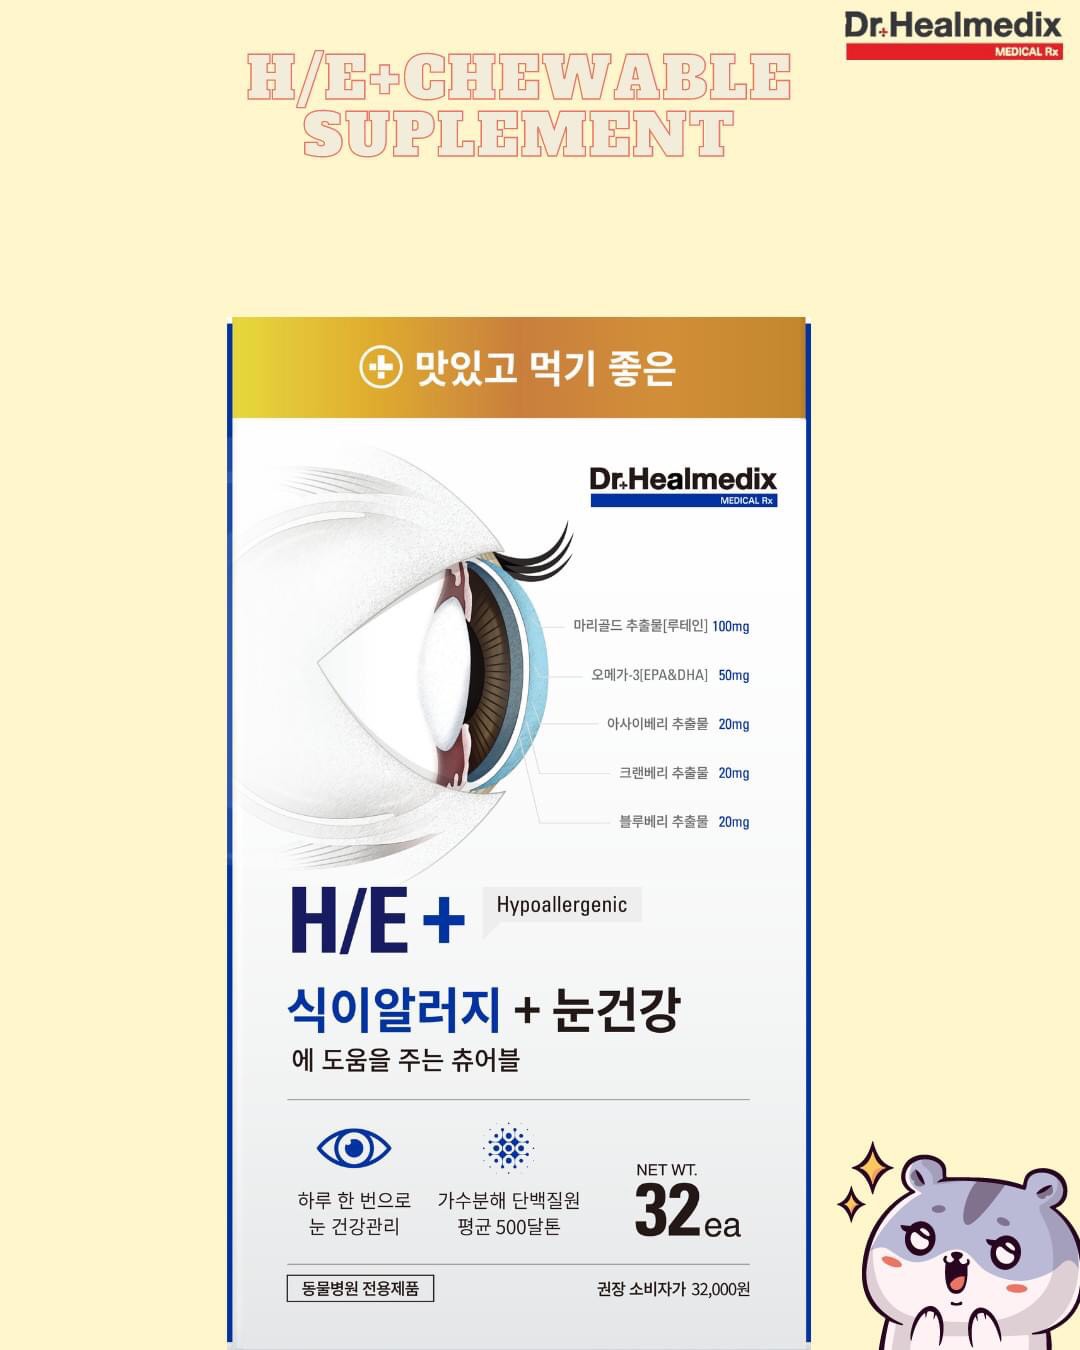 Kẹo dẻo chống dị ứng thức ăn tốt cho da, chống rụng lông & bảo vệ mắt DR.HEALMEDIX HYPOALLERGENIC & EYE+CHEWABLE [ Hộp 96g]